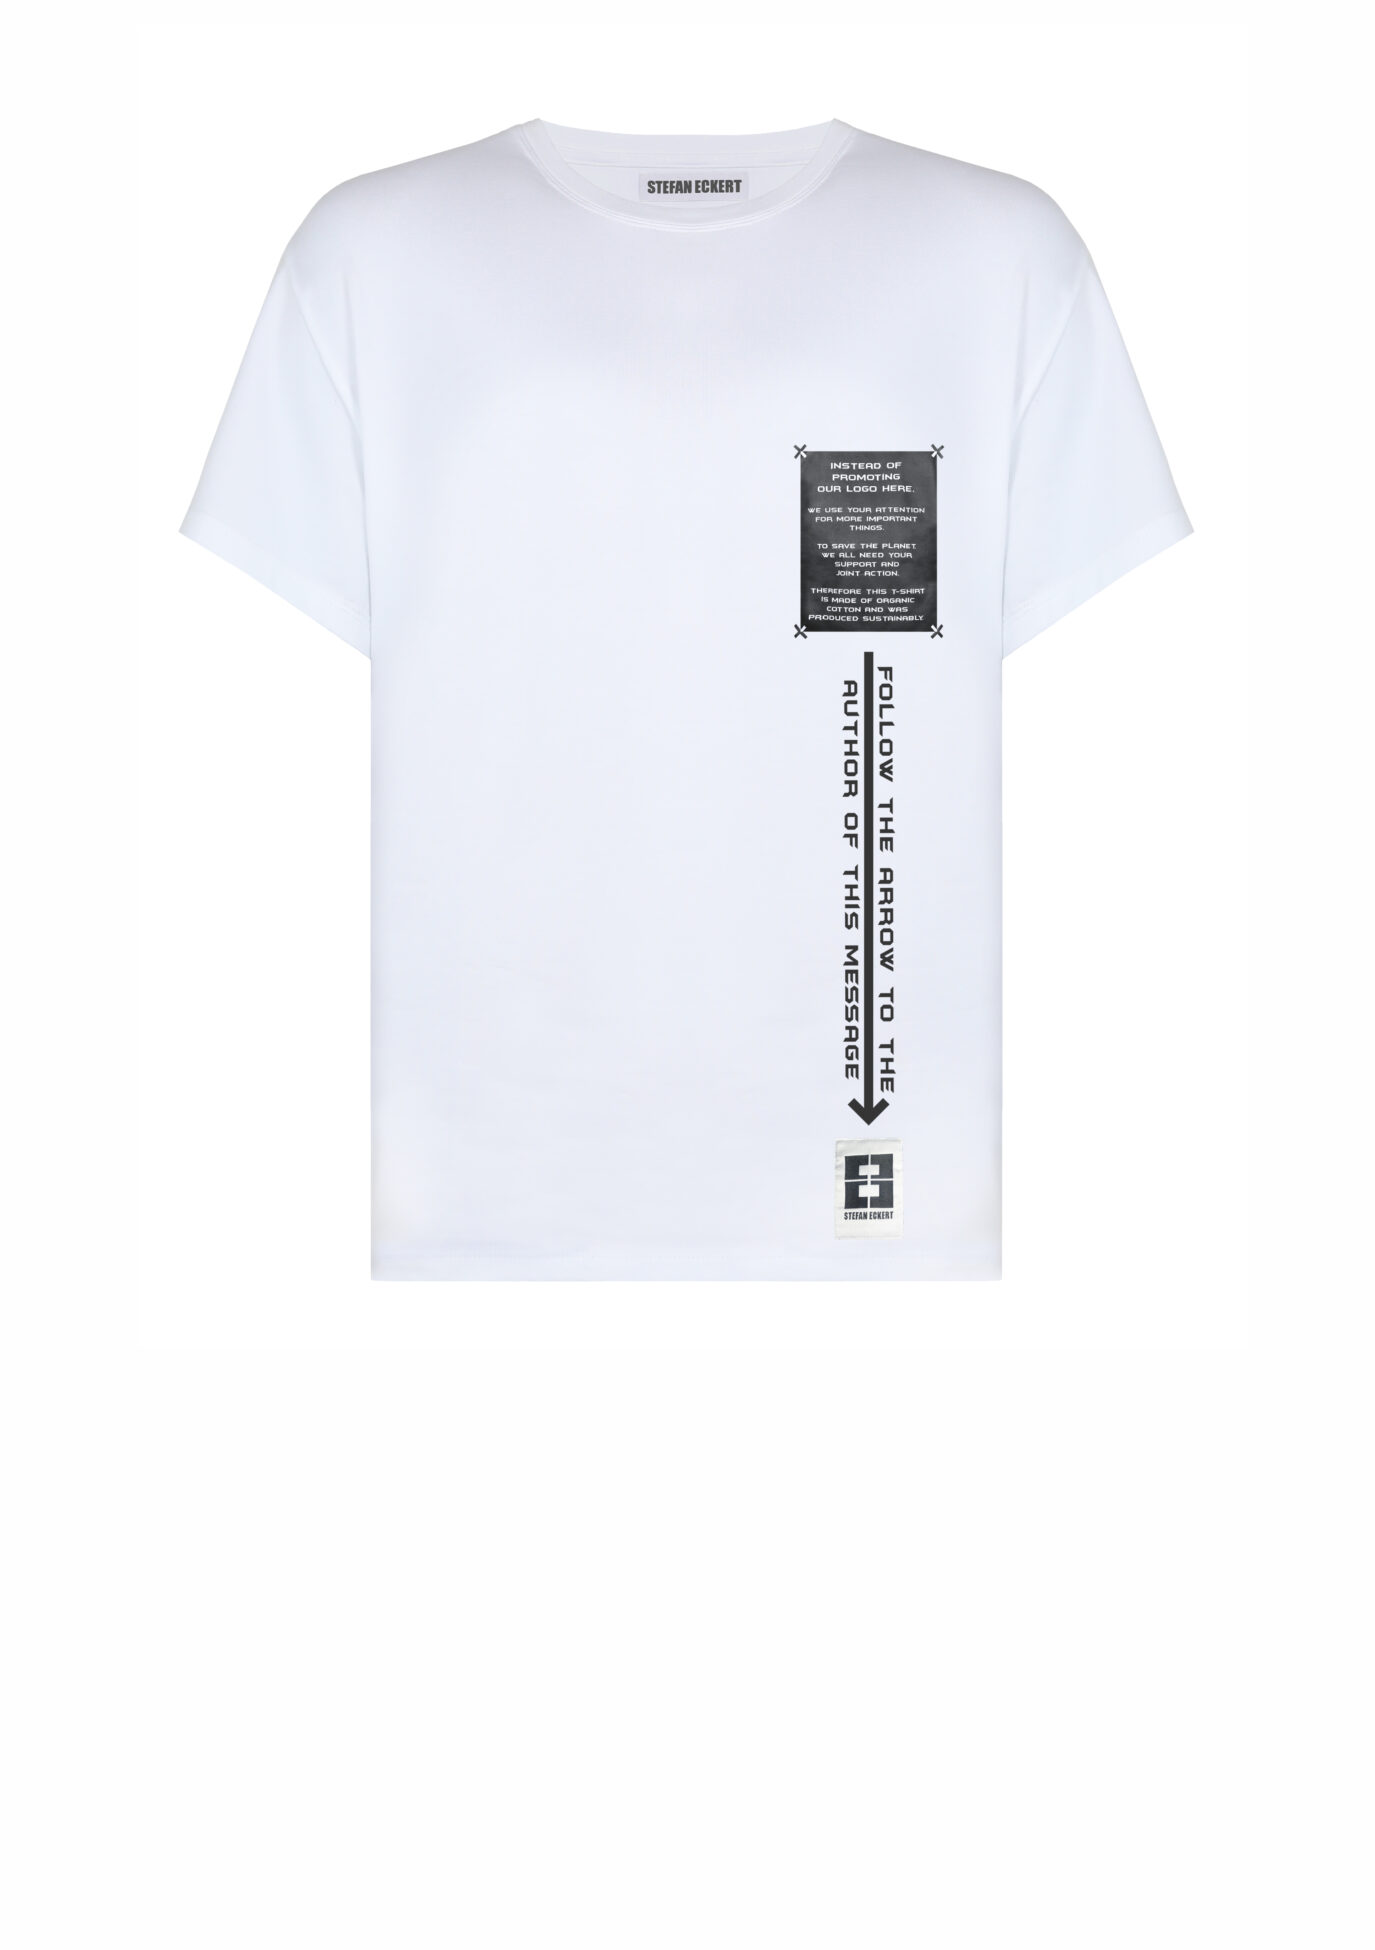 T-Shirt with statement by designer Stefan Eckert, made of organic cotton. T-Shirt Statement, weiß, von Designer Stefan Eckert, aus Bio-Baumwolle, nachhaltig produziert in Deutschland, für Damen und Herren